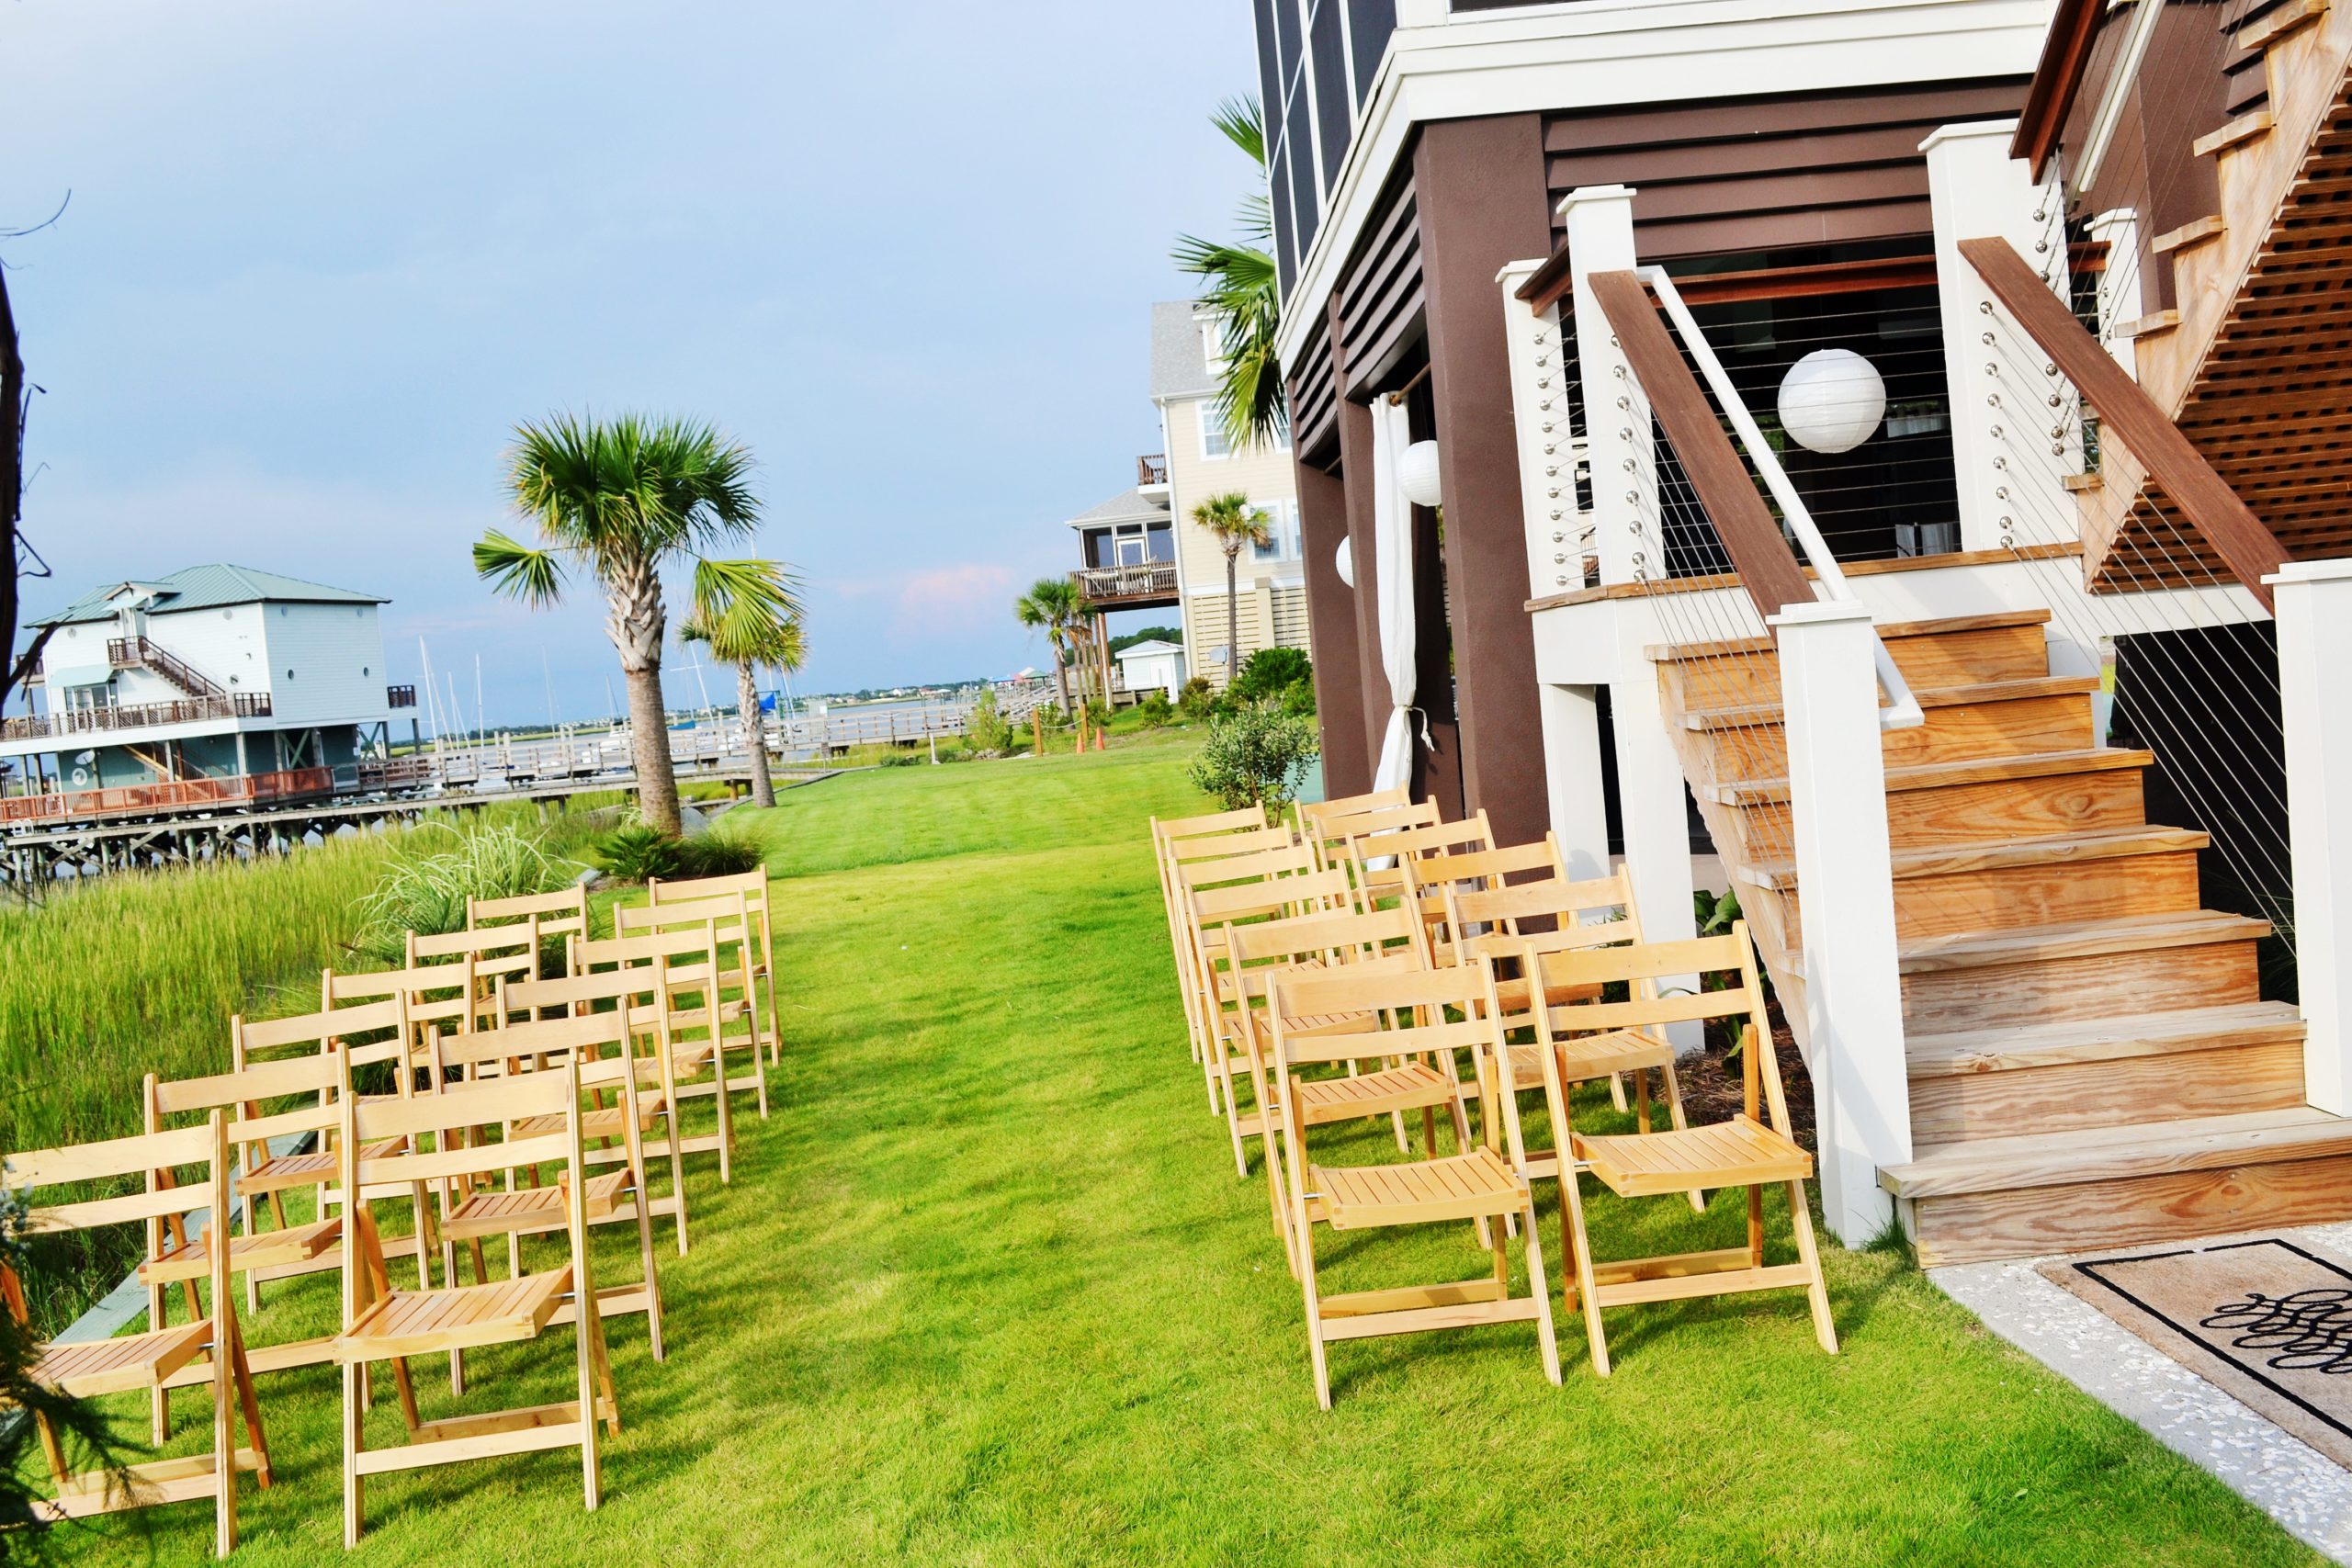 Luxury beach wedding in Folly Beach in Charleston, SC